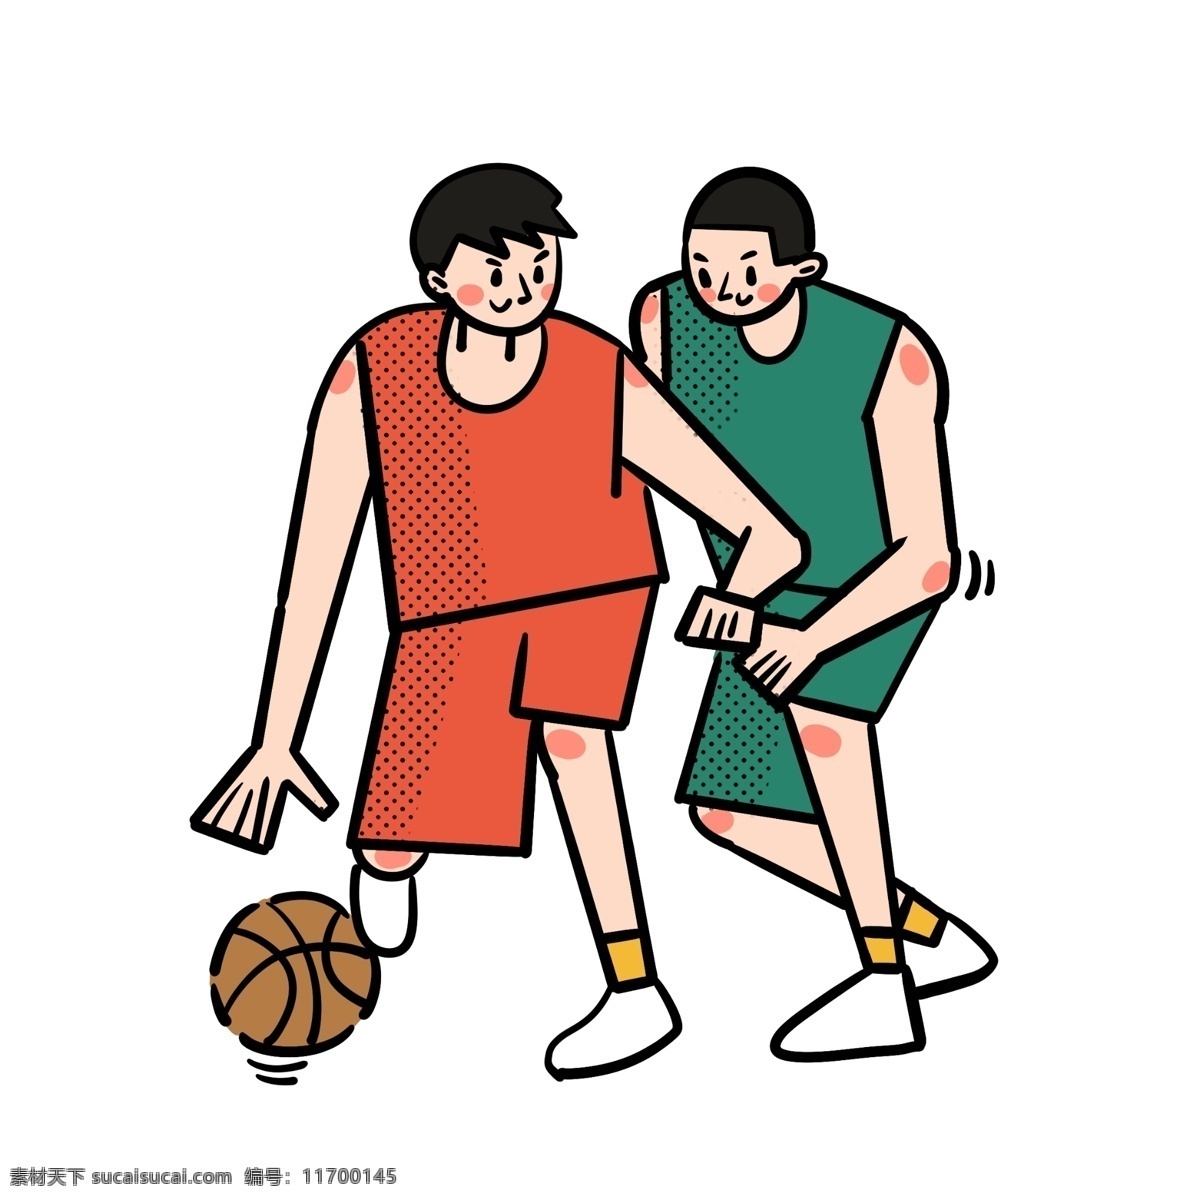 卡通 矢量 免 抠 扁平 可爱 篮球 男生 免抠 打篮球 红色 绿色 篮球衣 运动 休闲 快乐 开心 运球 阳光 活力 兄弟